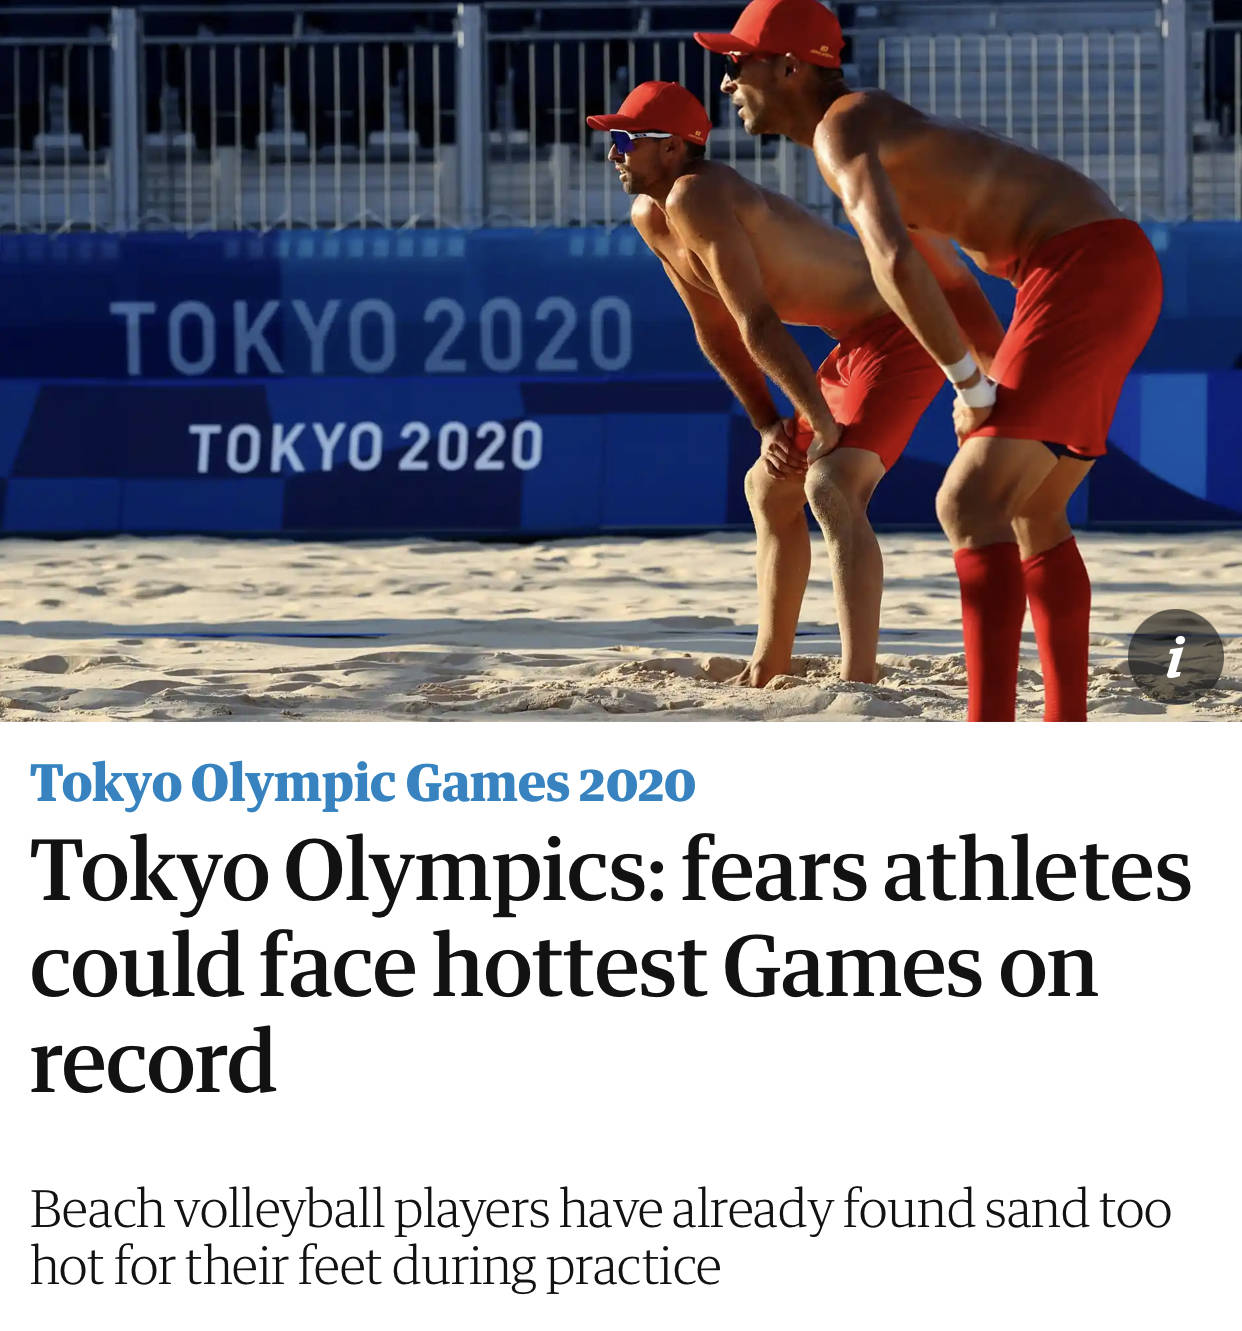 热浪酷暑席卷东京 专家提醒马拉松运动员需应对中暑风险